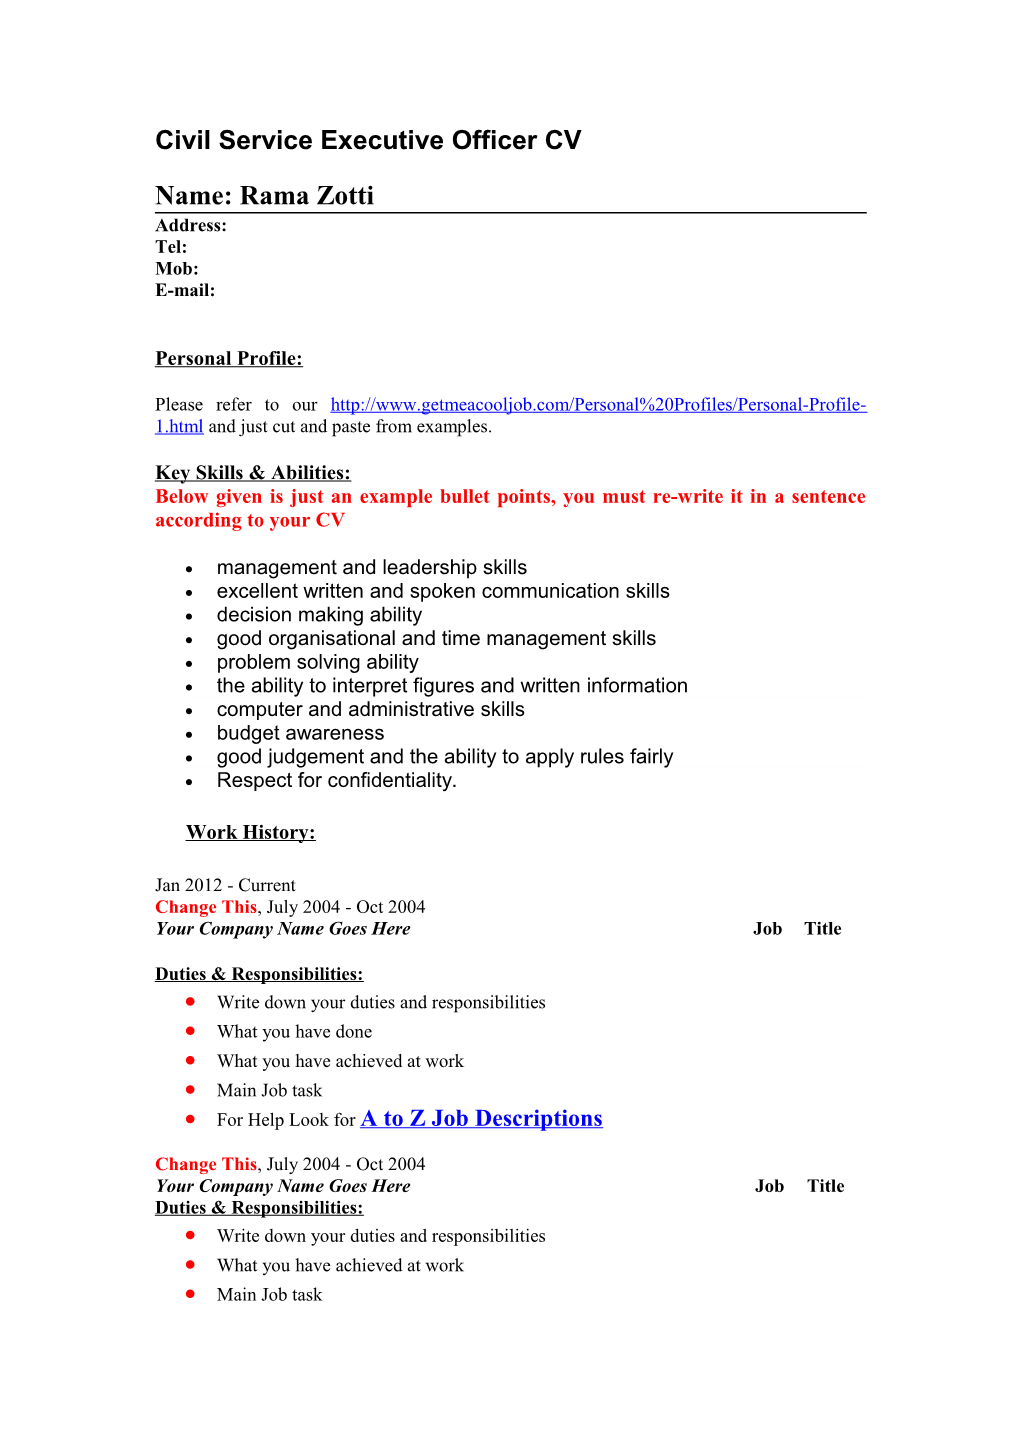 Civil Service Executive Officer Job Descriptions